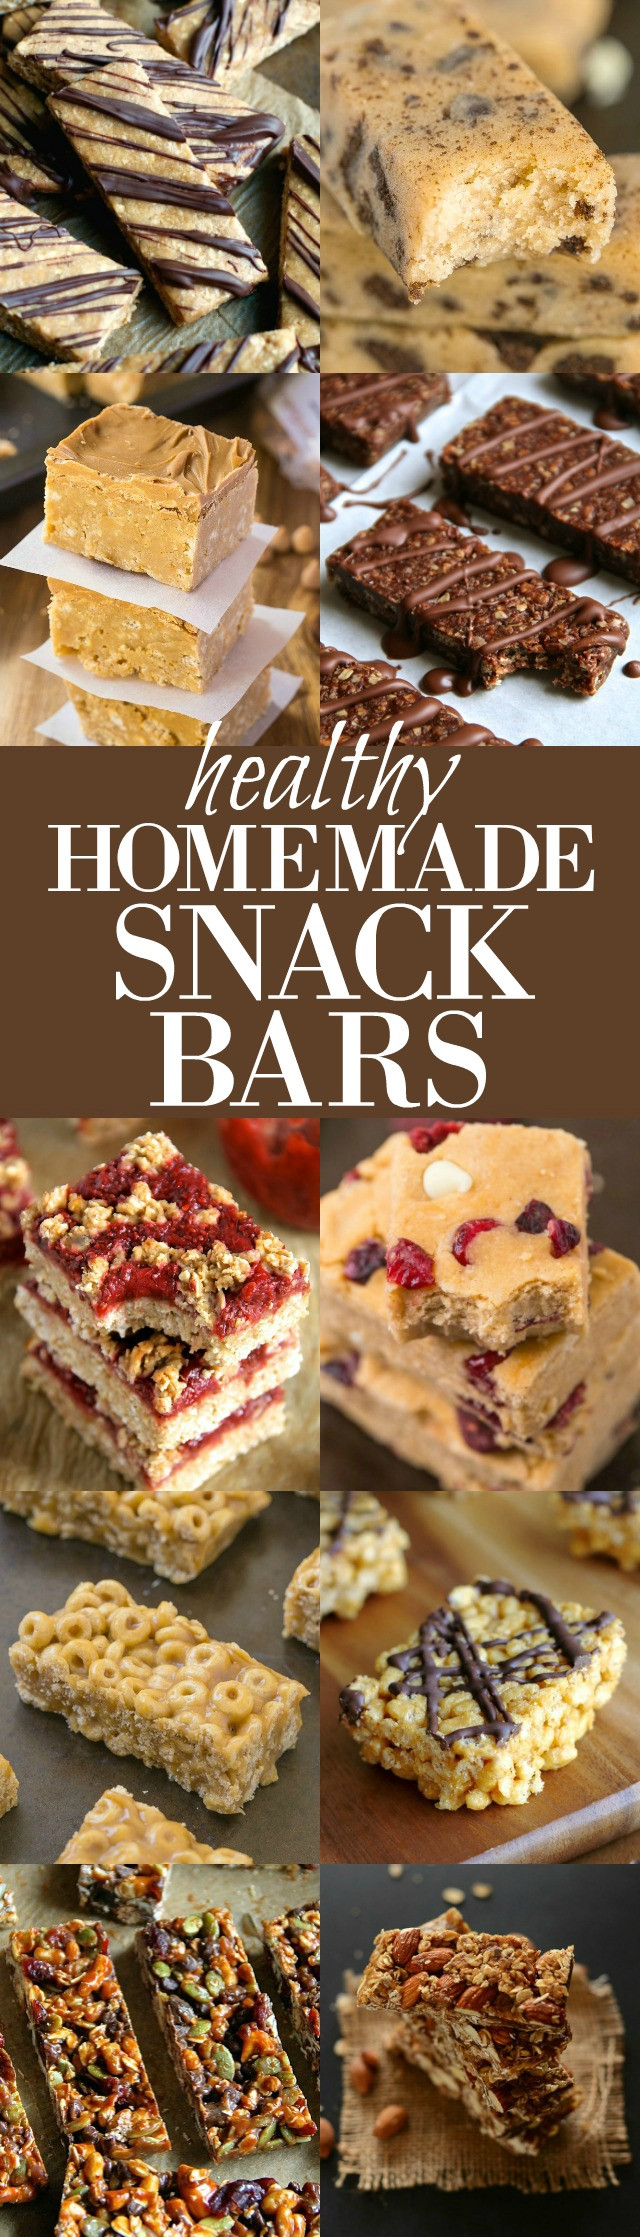 Healthy Homemade Snacks
 15 Healthy Homemade Snack Bars